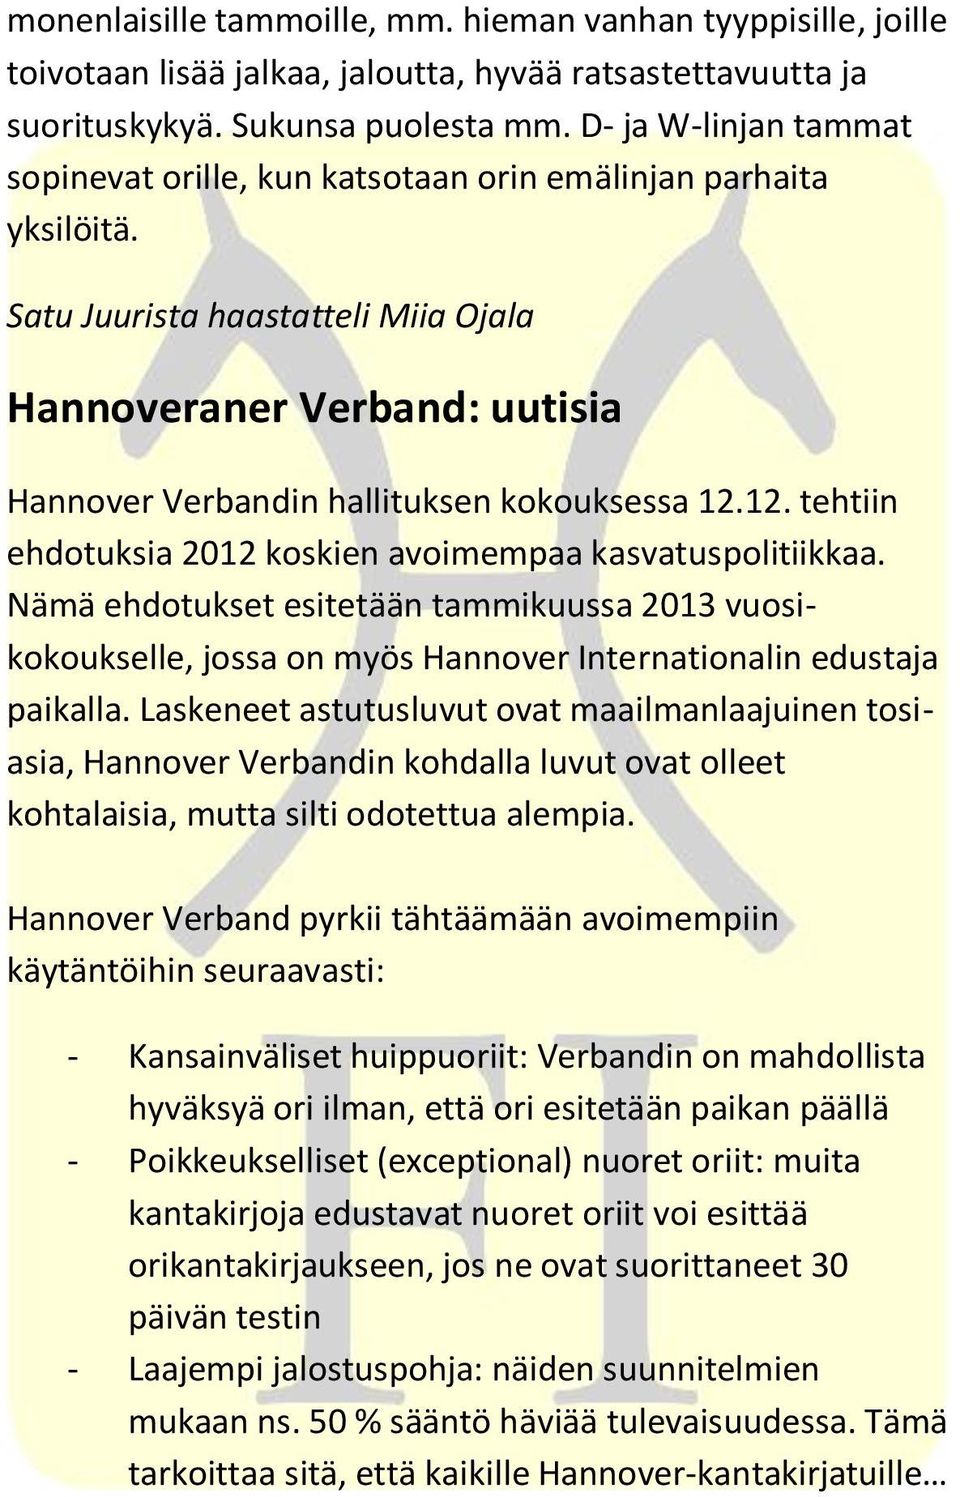 Satu Juurista haastatteli Miia Ojala Hannoveraner Verband: uutisia Hannover Verbandin hallituksen kokouksessa 12.12. tehtiin ehdotuksia 2012 koskien avoimempaa kasvatuspolitiikkaa.